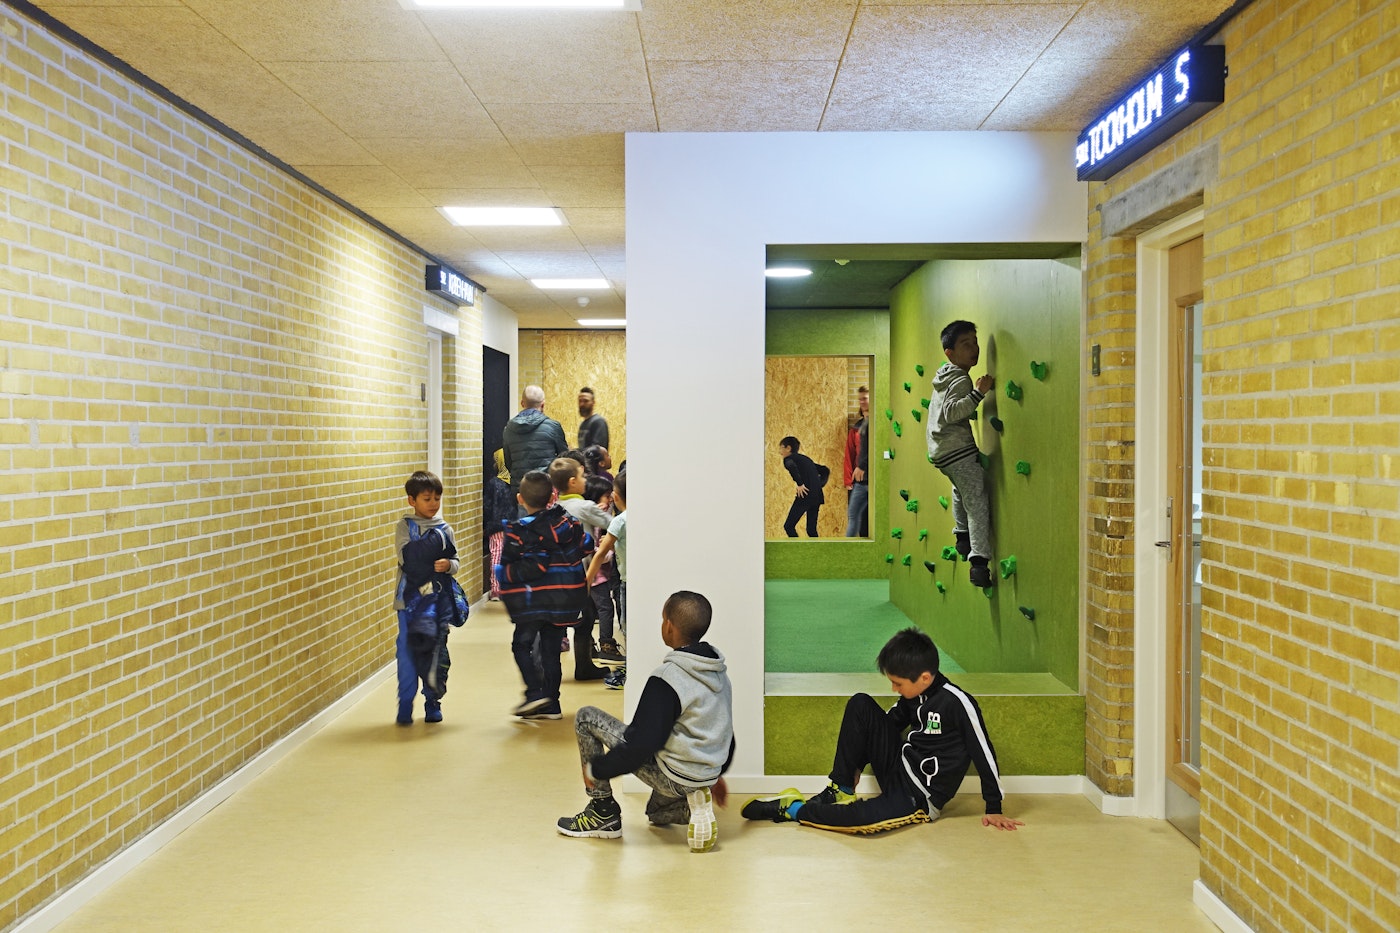 The Motion Trail, Søndervang School